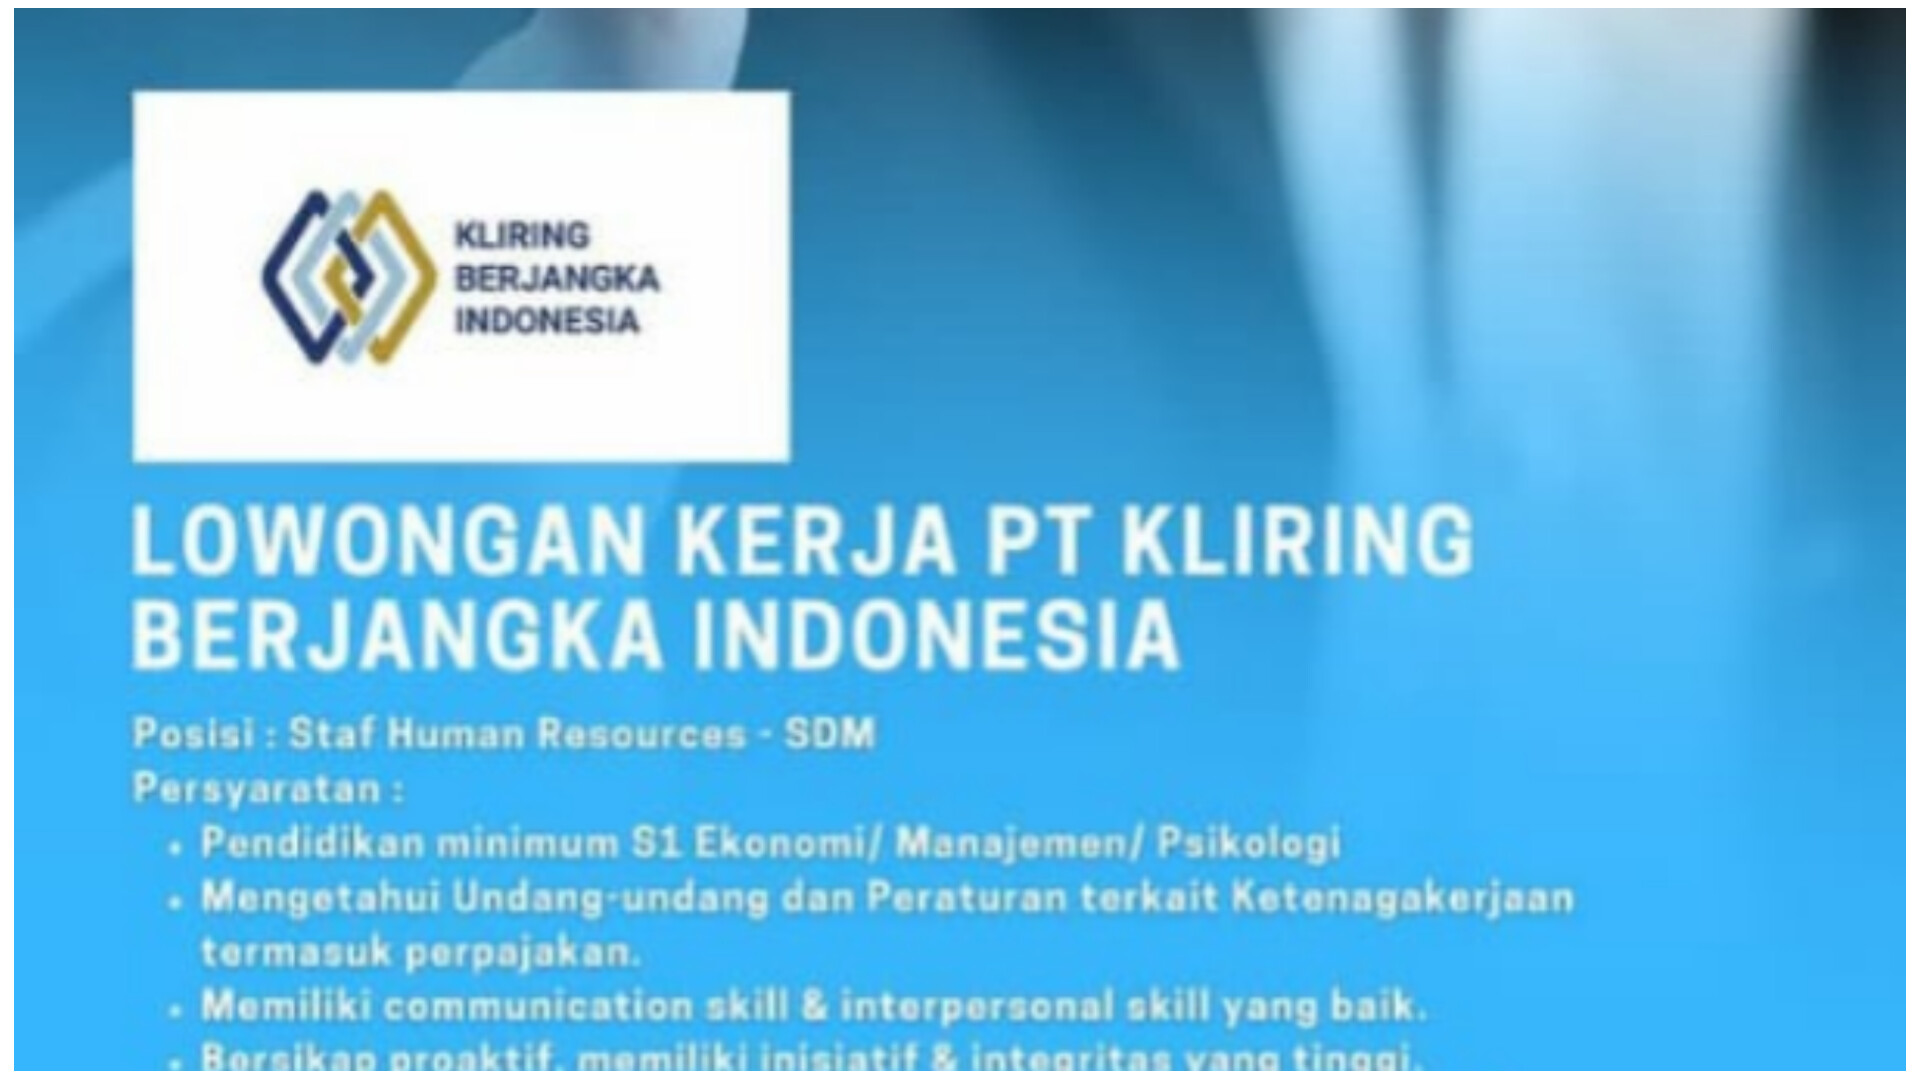 Perusahaan BUMN PT Kliring Berjangka Indonesia Buka Lowongan Kerja, Posisi dan Cek Persyaratan 